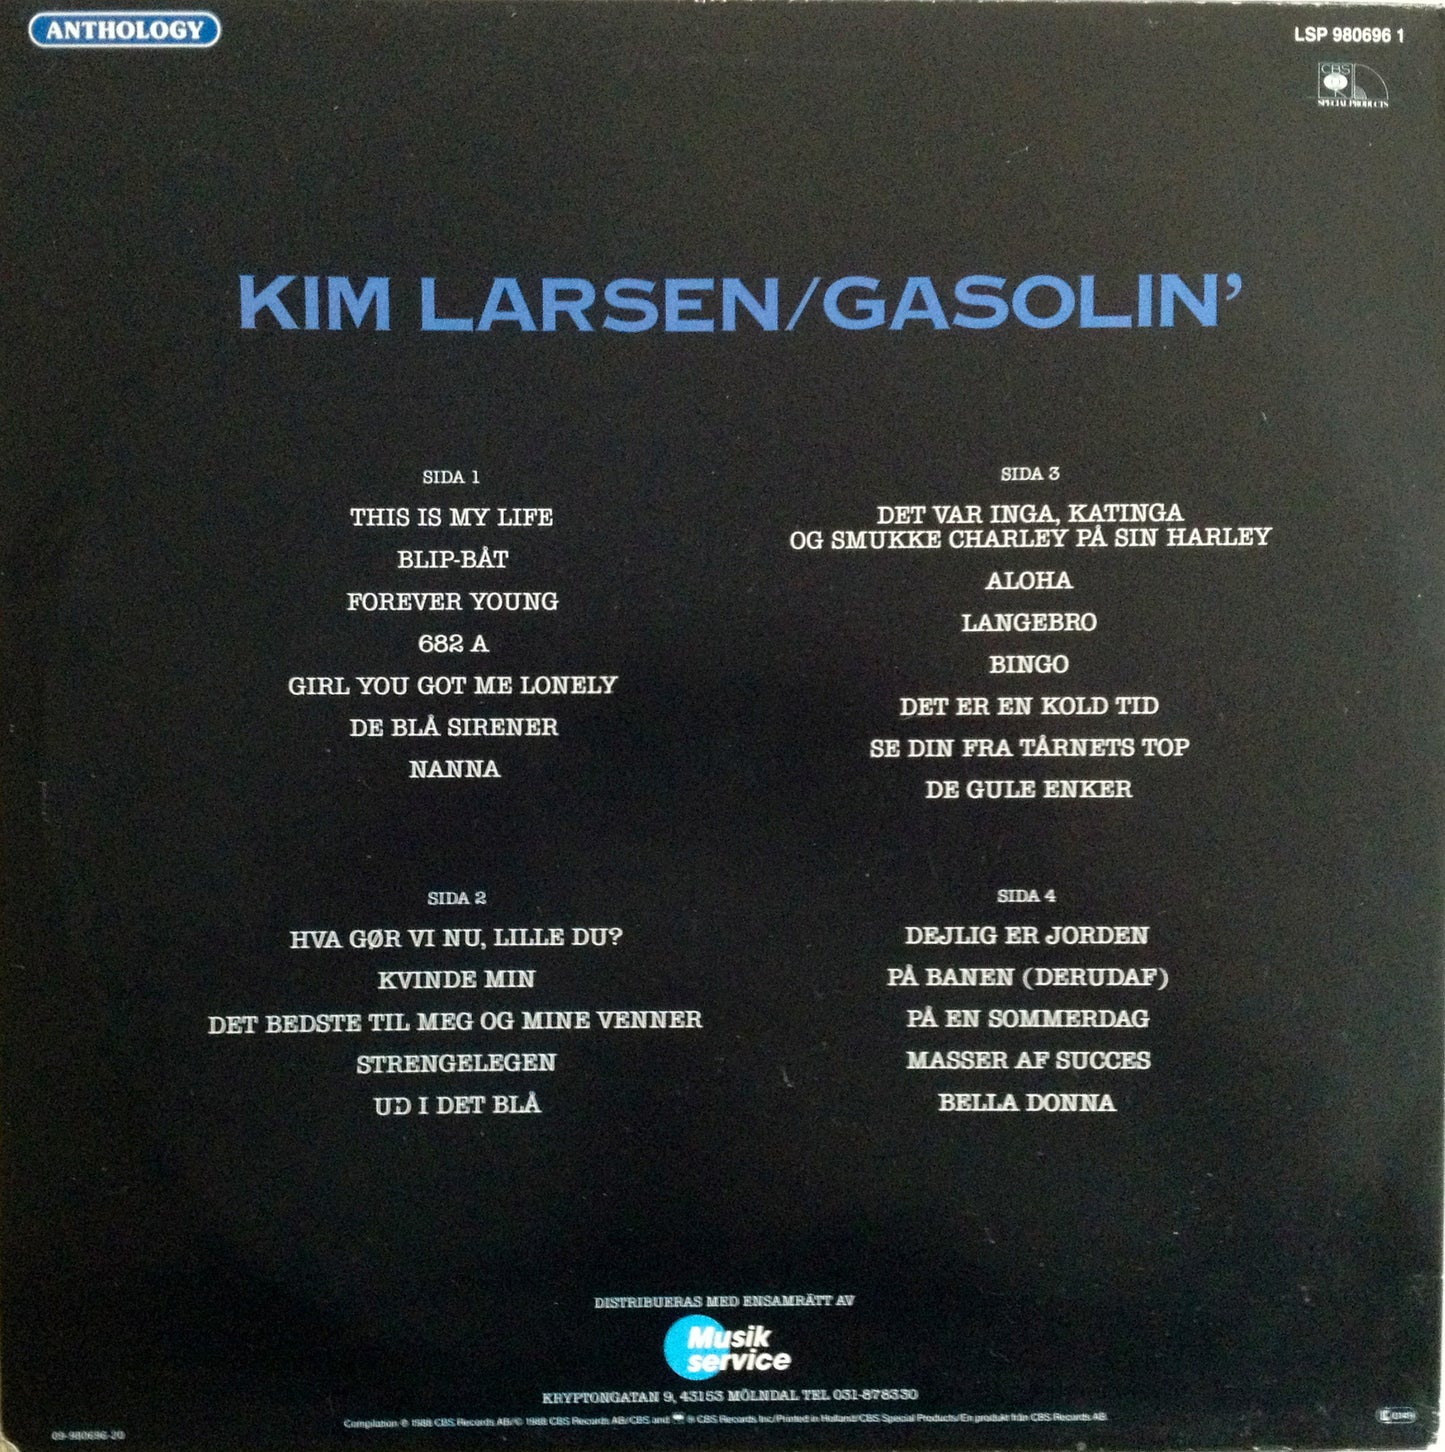 Larsen, Kim/Gasolin' - Anthology.